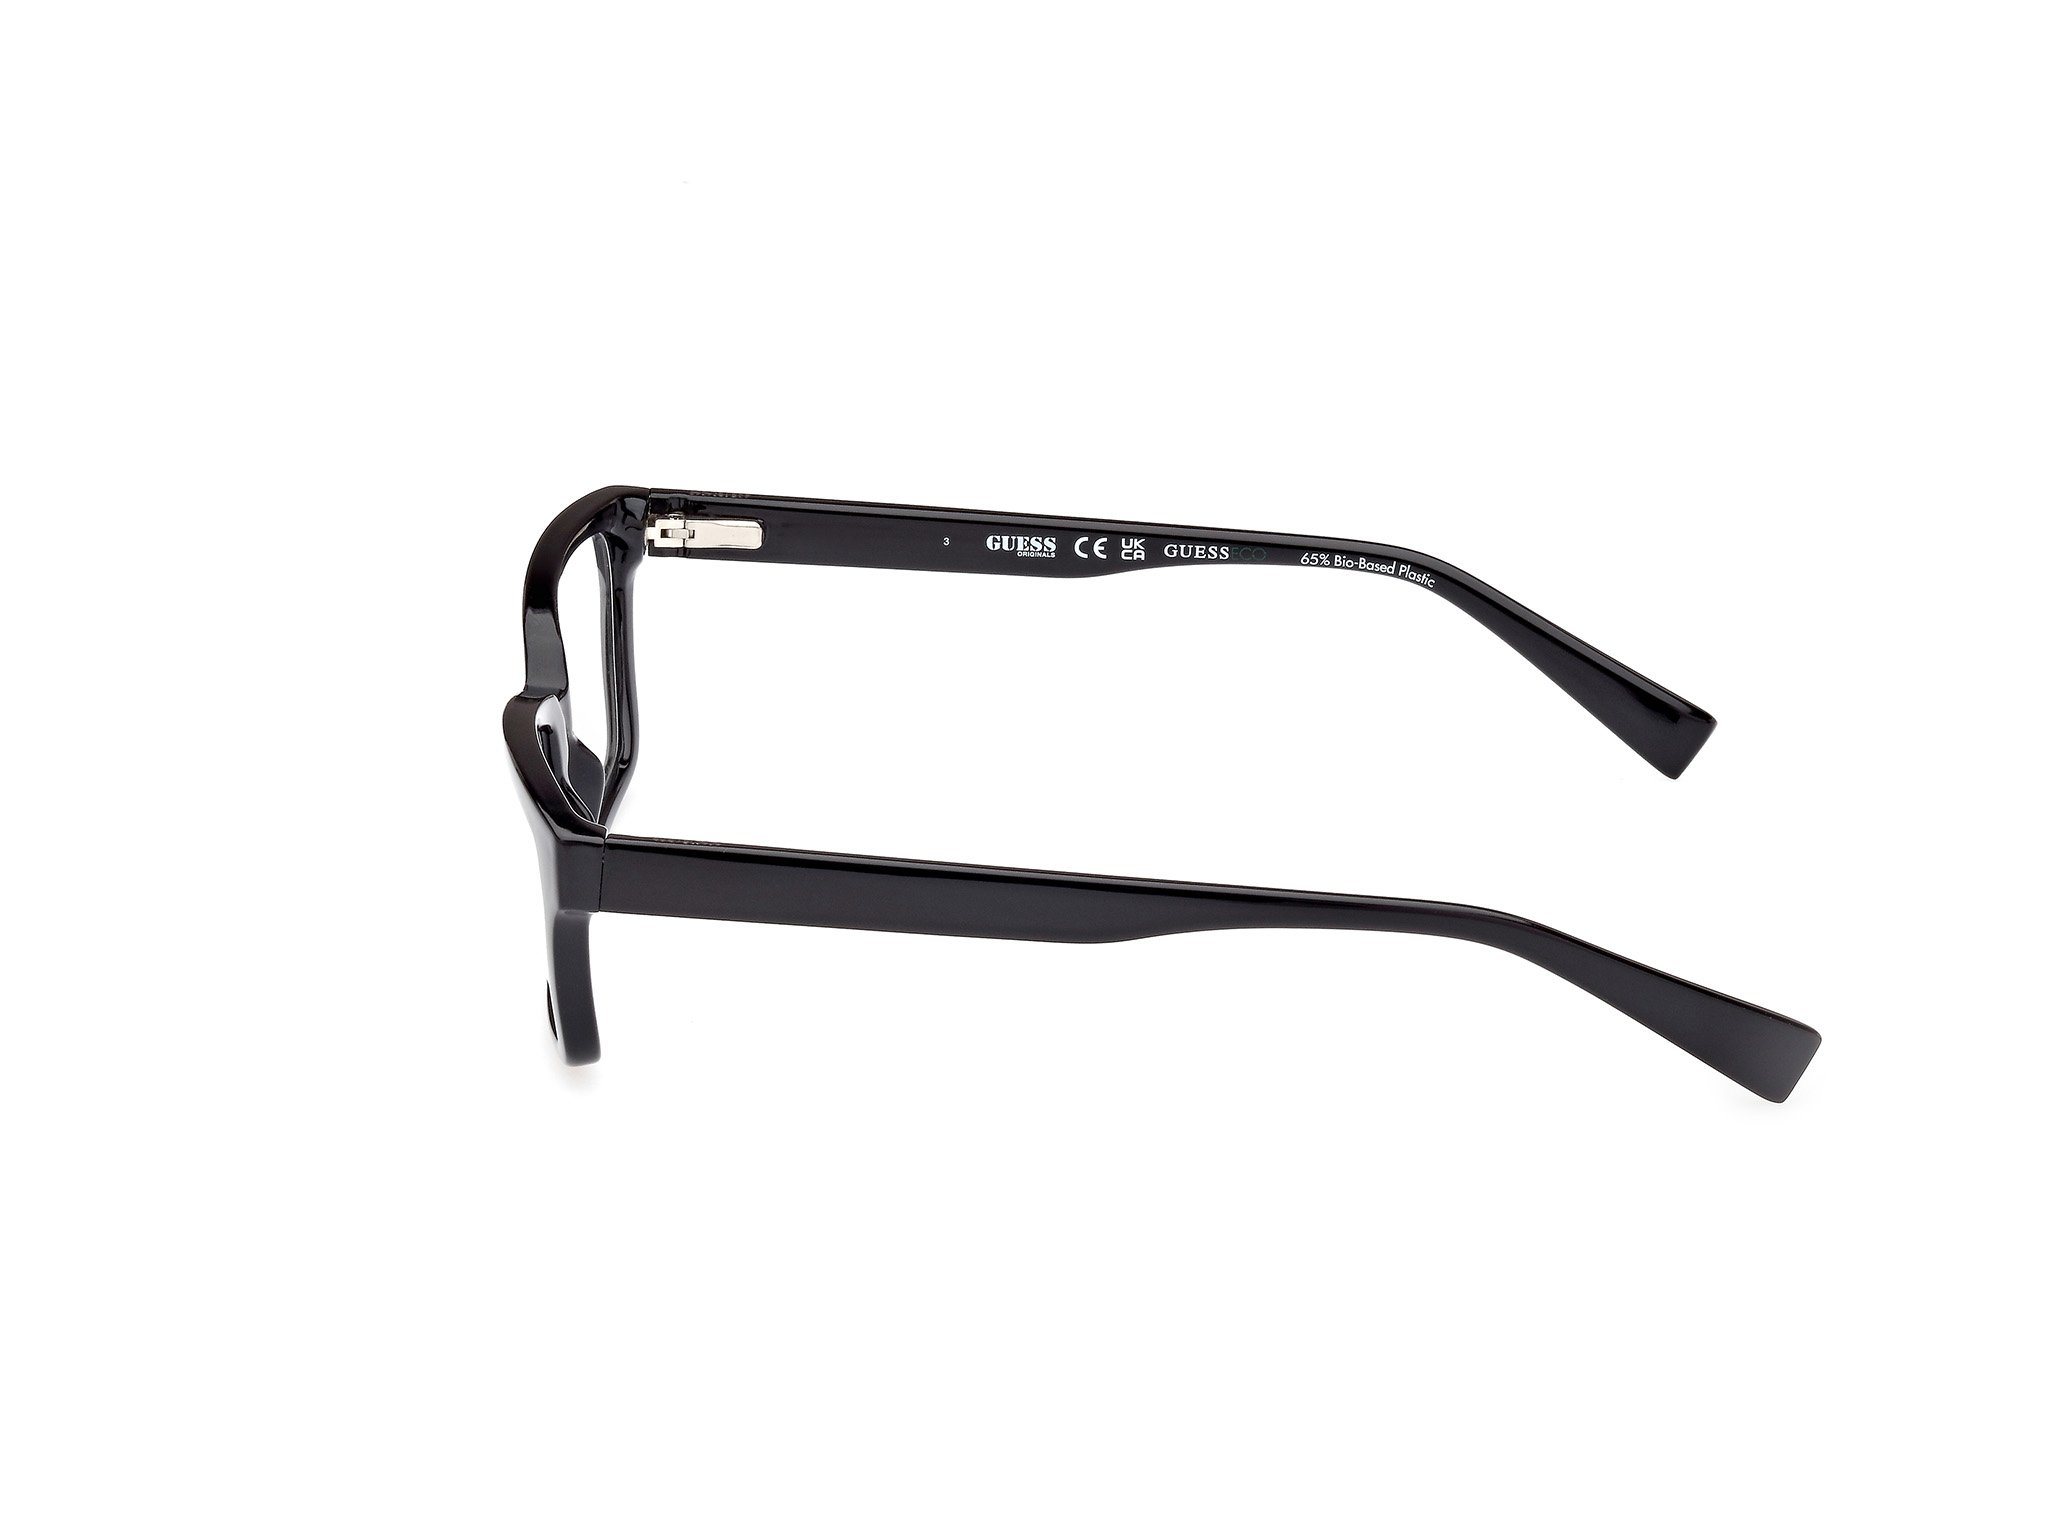 Das Bild zeigt die Korrektionsbrille GU8080 001 von der Marke Guess in schwarz.